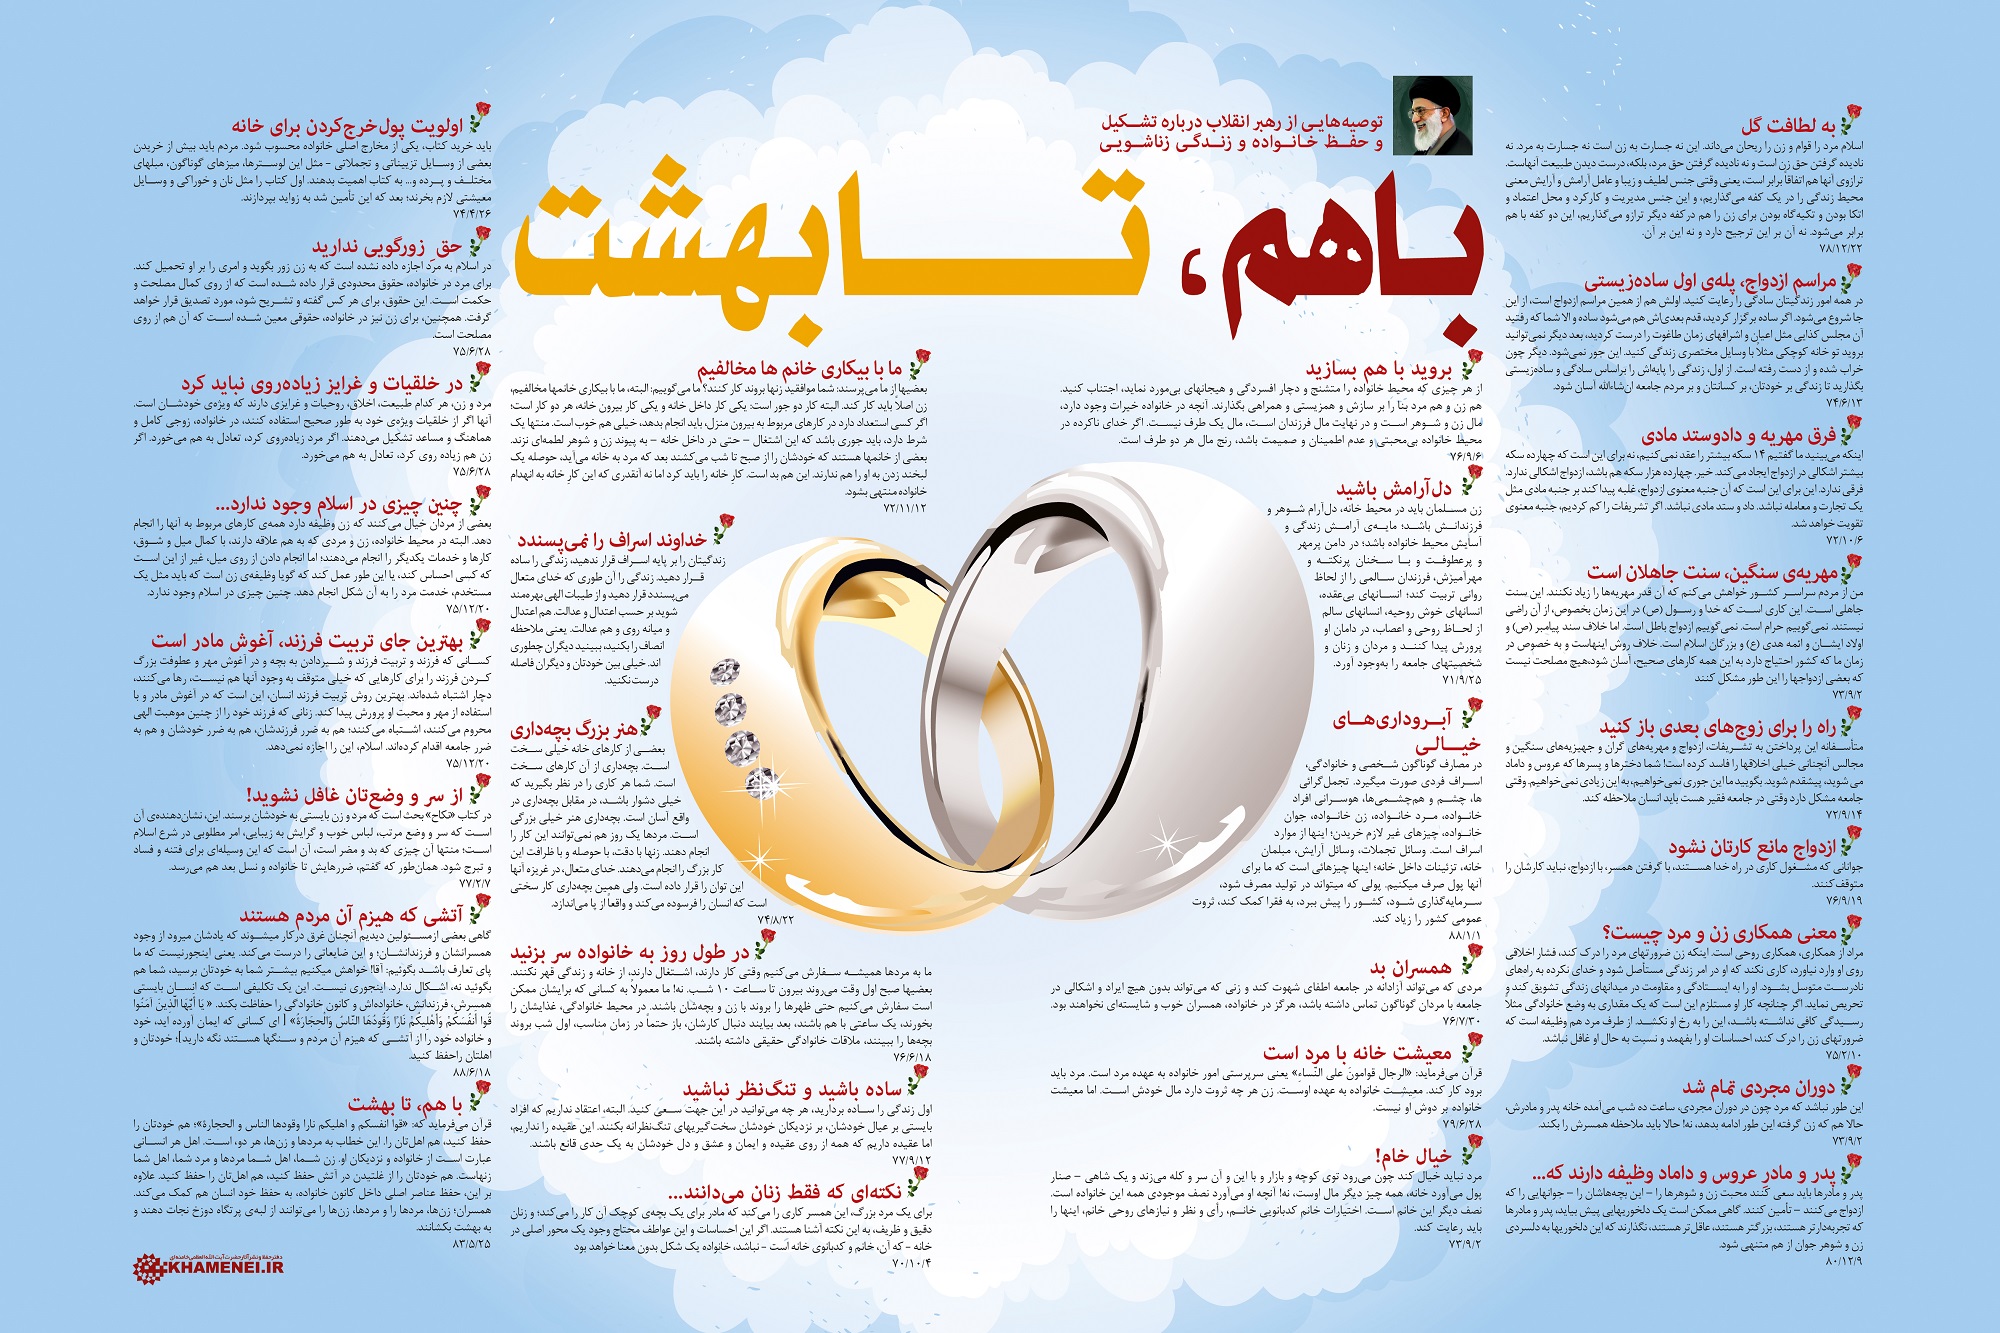 پوستر بیانات مقام معظم رهبری درباره ازدواج: "با هم، تا بهشت" توصیه‌هایی از رهبر معظم انقلاب درباره تشکیل و حفظ خانواده و زندگی زناشویی.